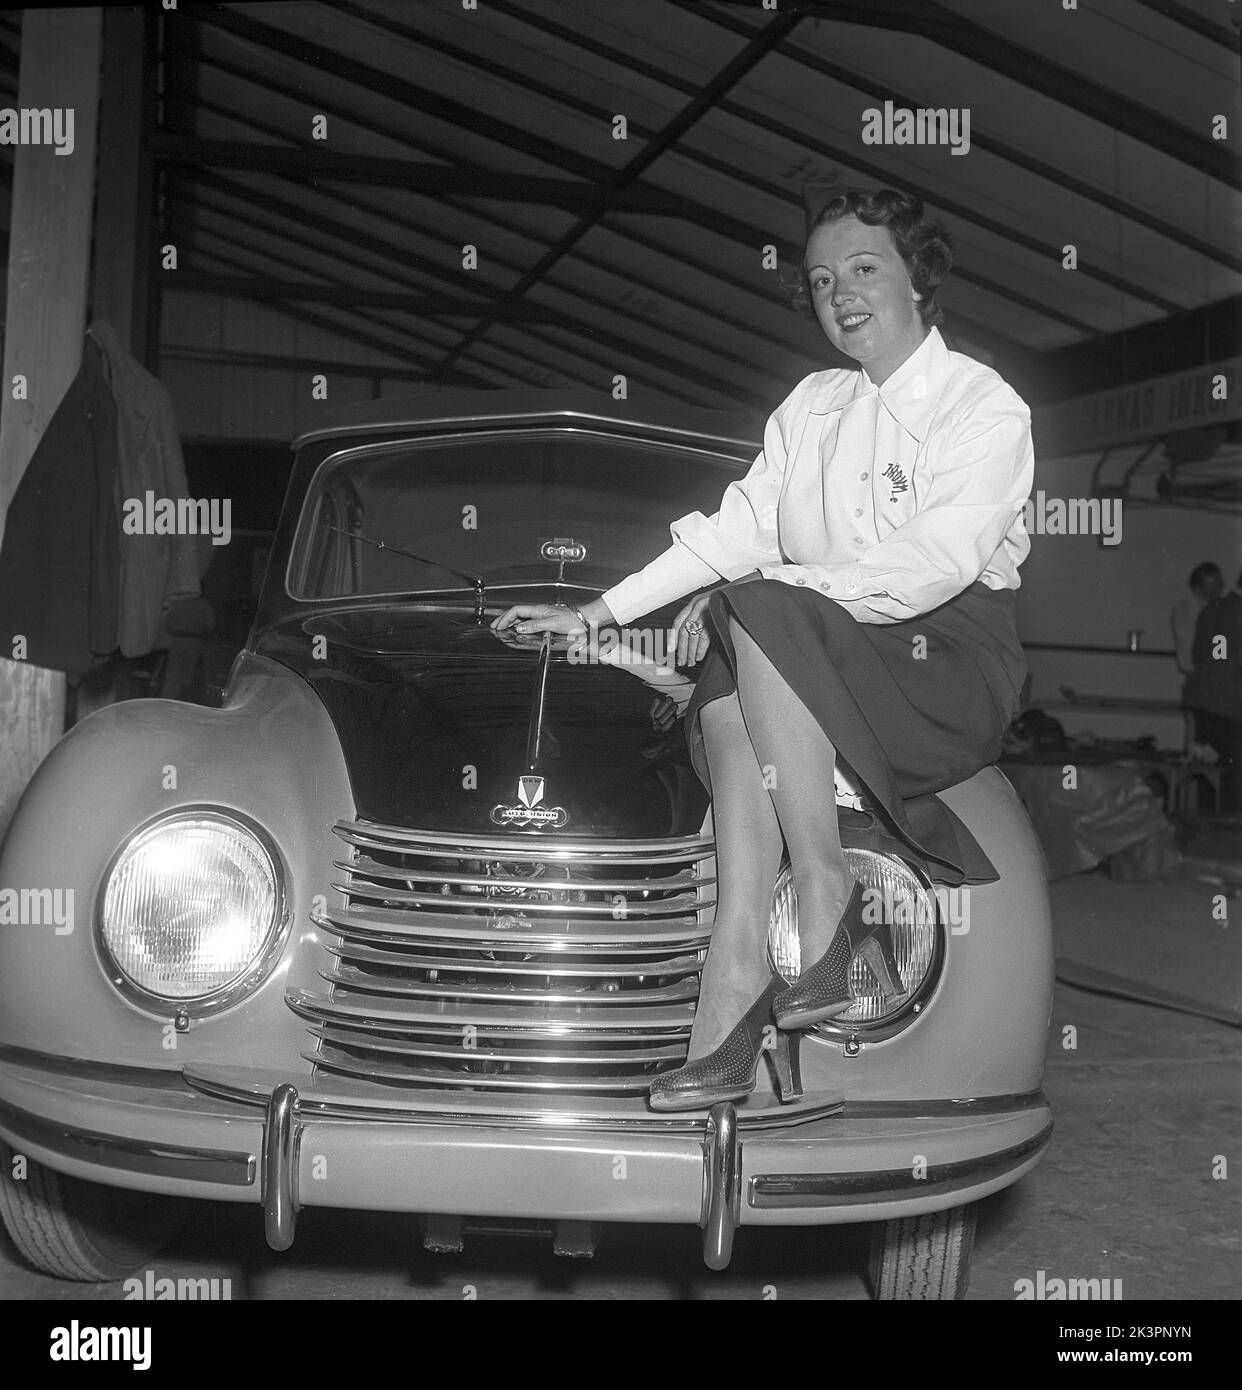 In der 1950s. Eine junge Frau auf der Haube des brandneuen Autos, eine DKW, präsentierte sich der schwedischen Öffentlichkeit auf der Messe St. Eriksmassan. Deutscher Automobilhersteller, der auch Motorräder herstellt, gehört zur Auto Union. Schweden 1950 Kristoffersson Ref. AZ80-10 Stockfoto